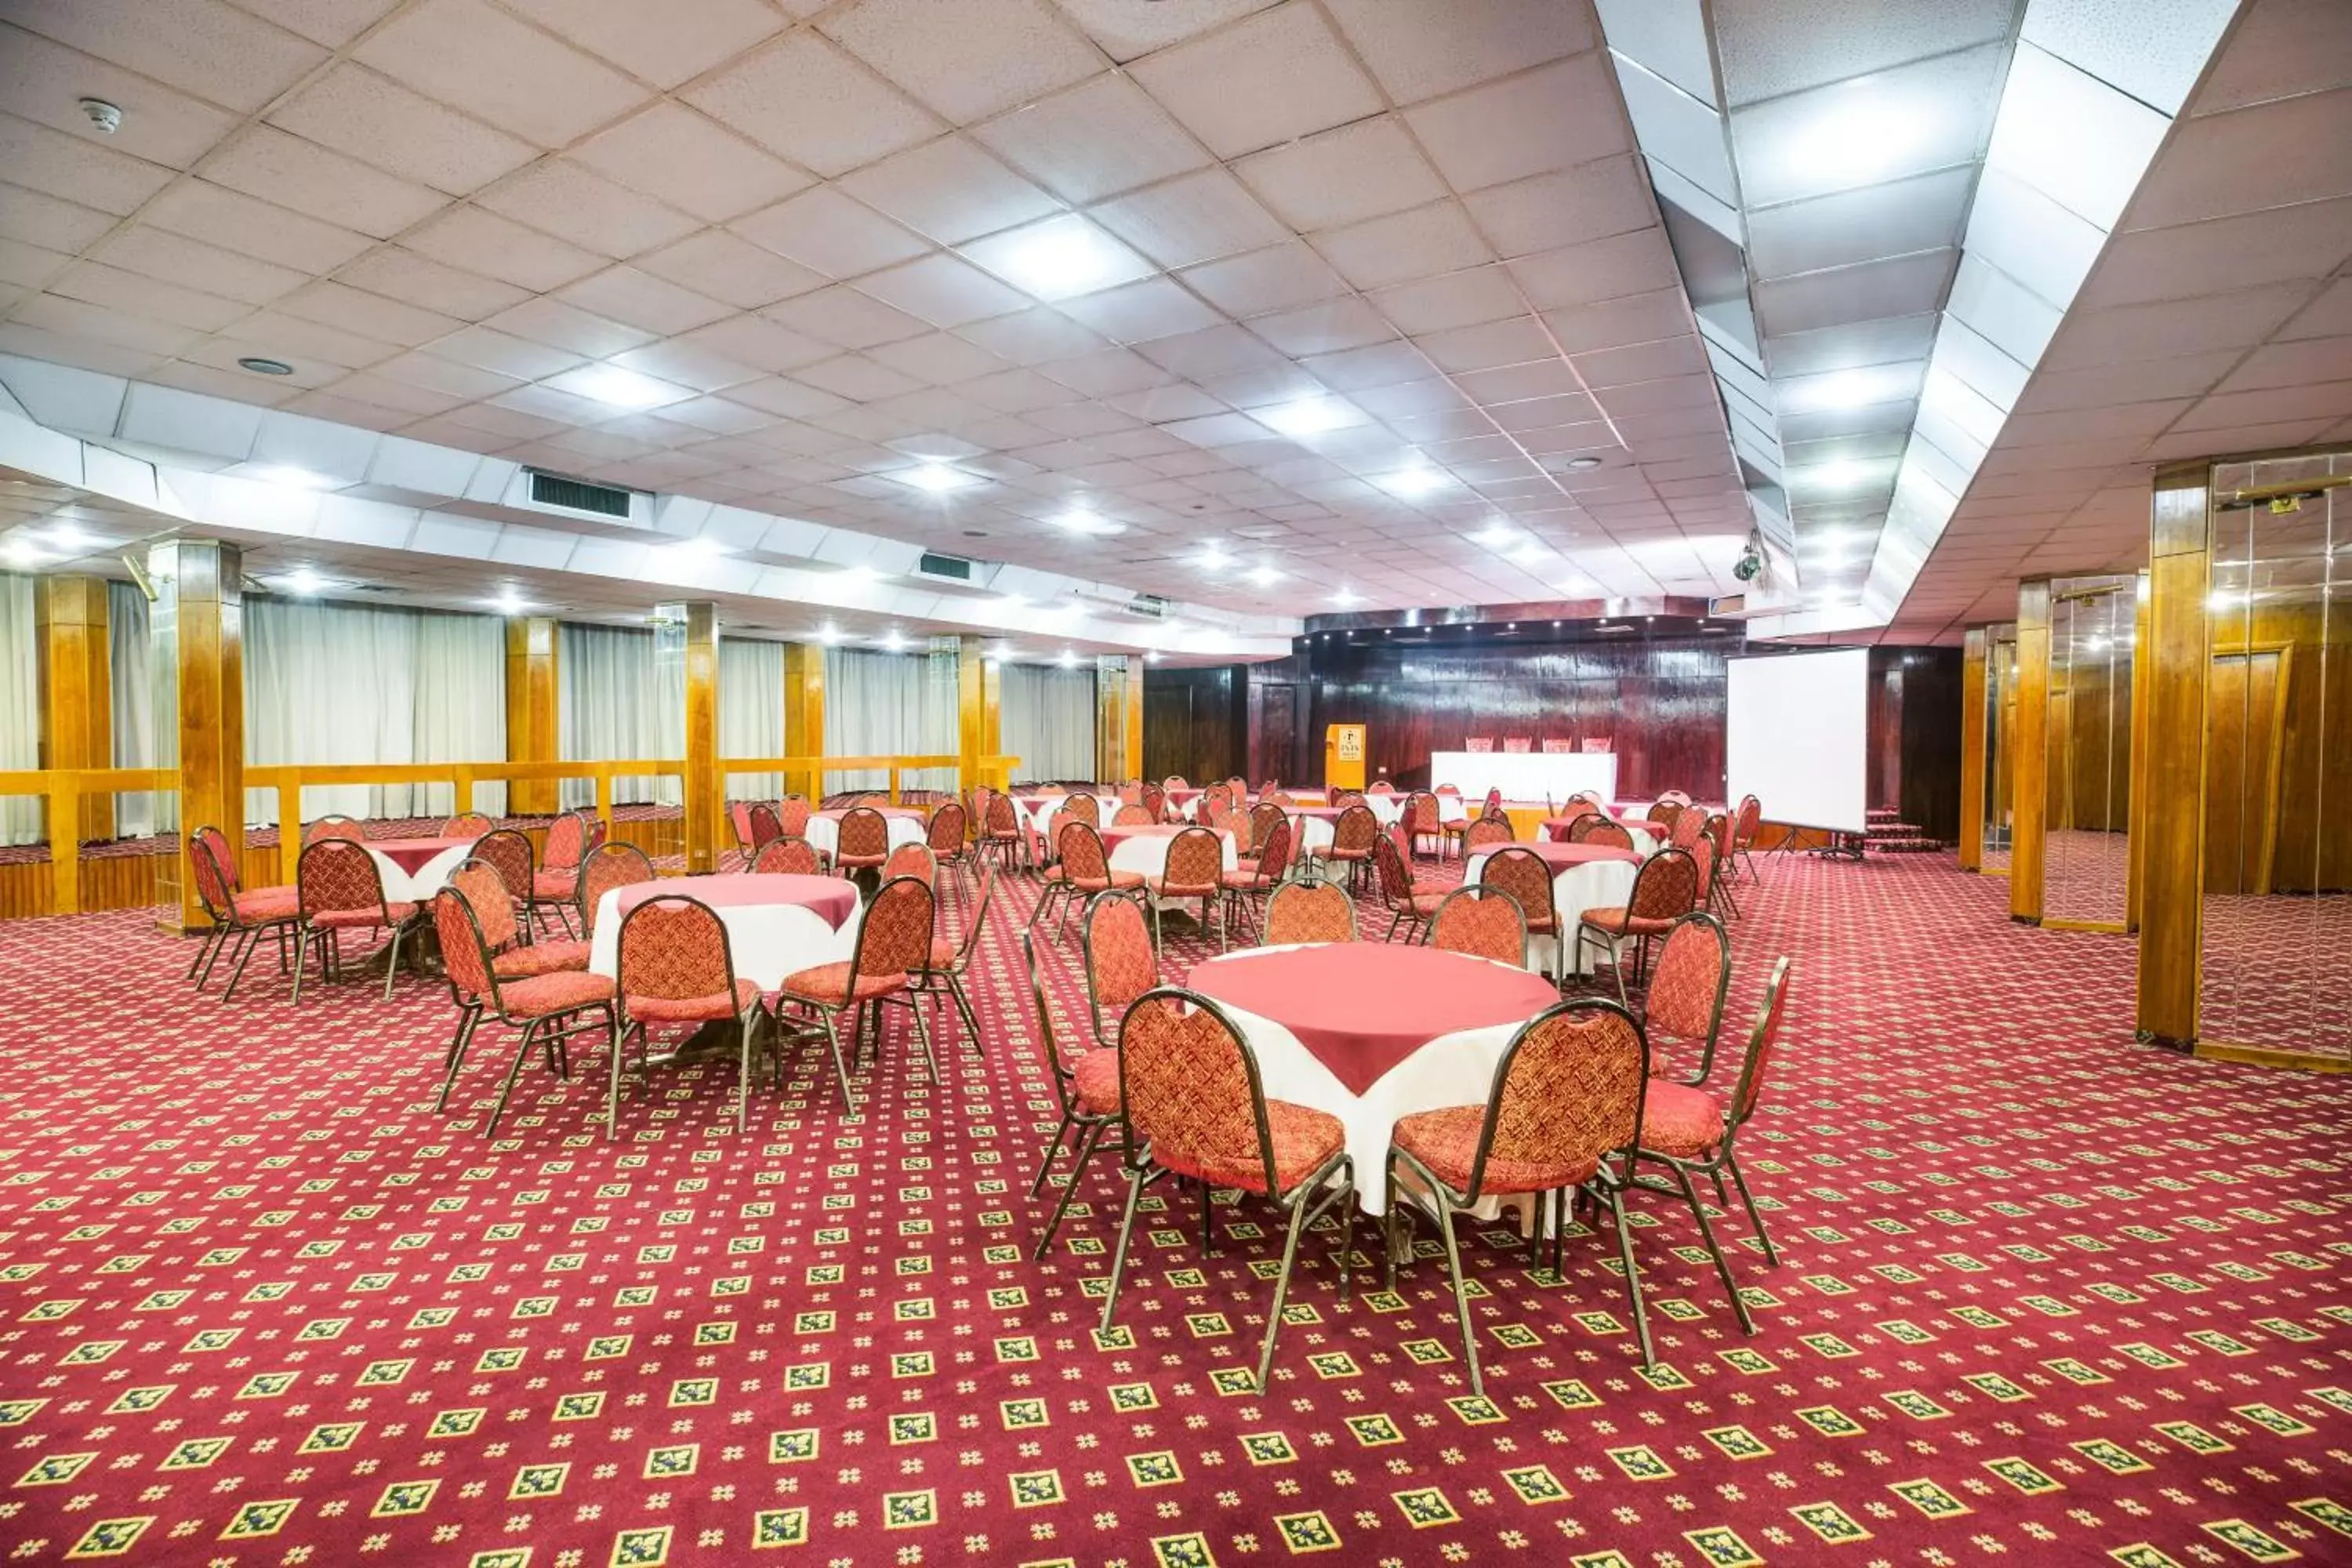 Banquet/Function facilities, Banquet Facilities in Pyramisa Hotel Luxor